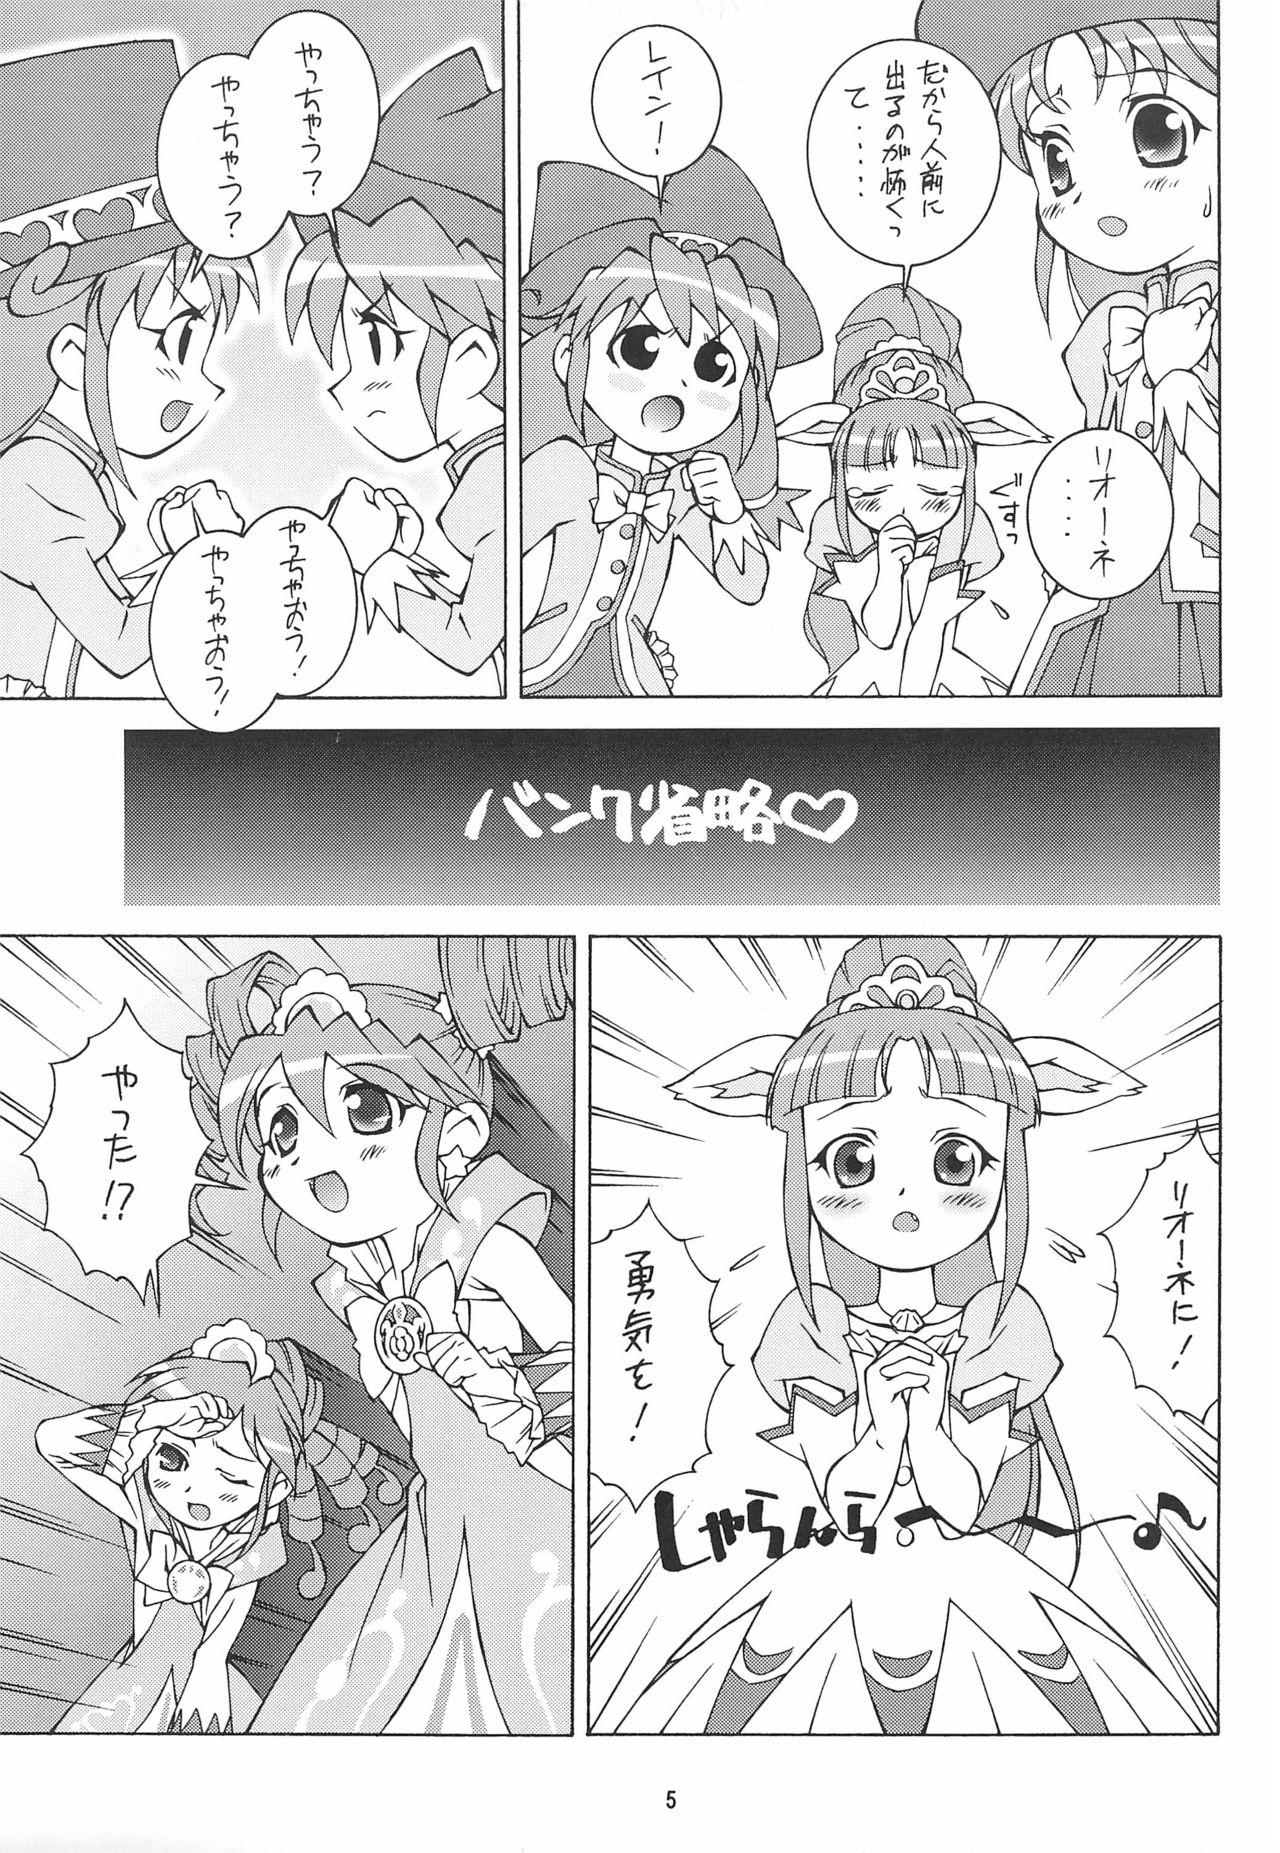 4some Fushigiboshi no Kemono no Hime - Fushigiboshi no futagohime | twin princesses of the wonder planet Moms - Page 5